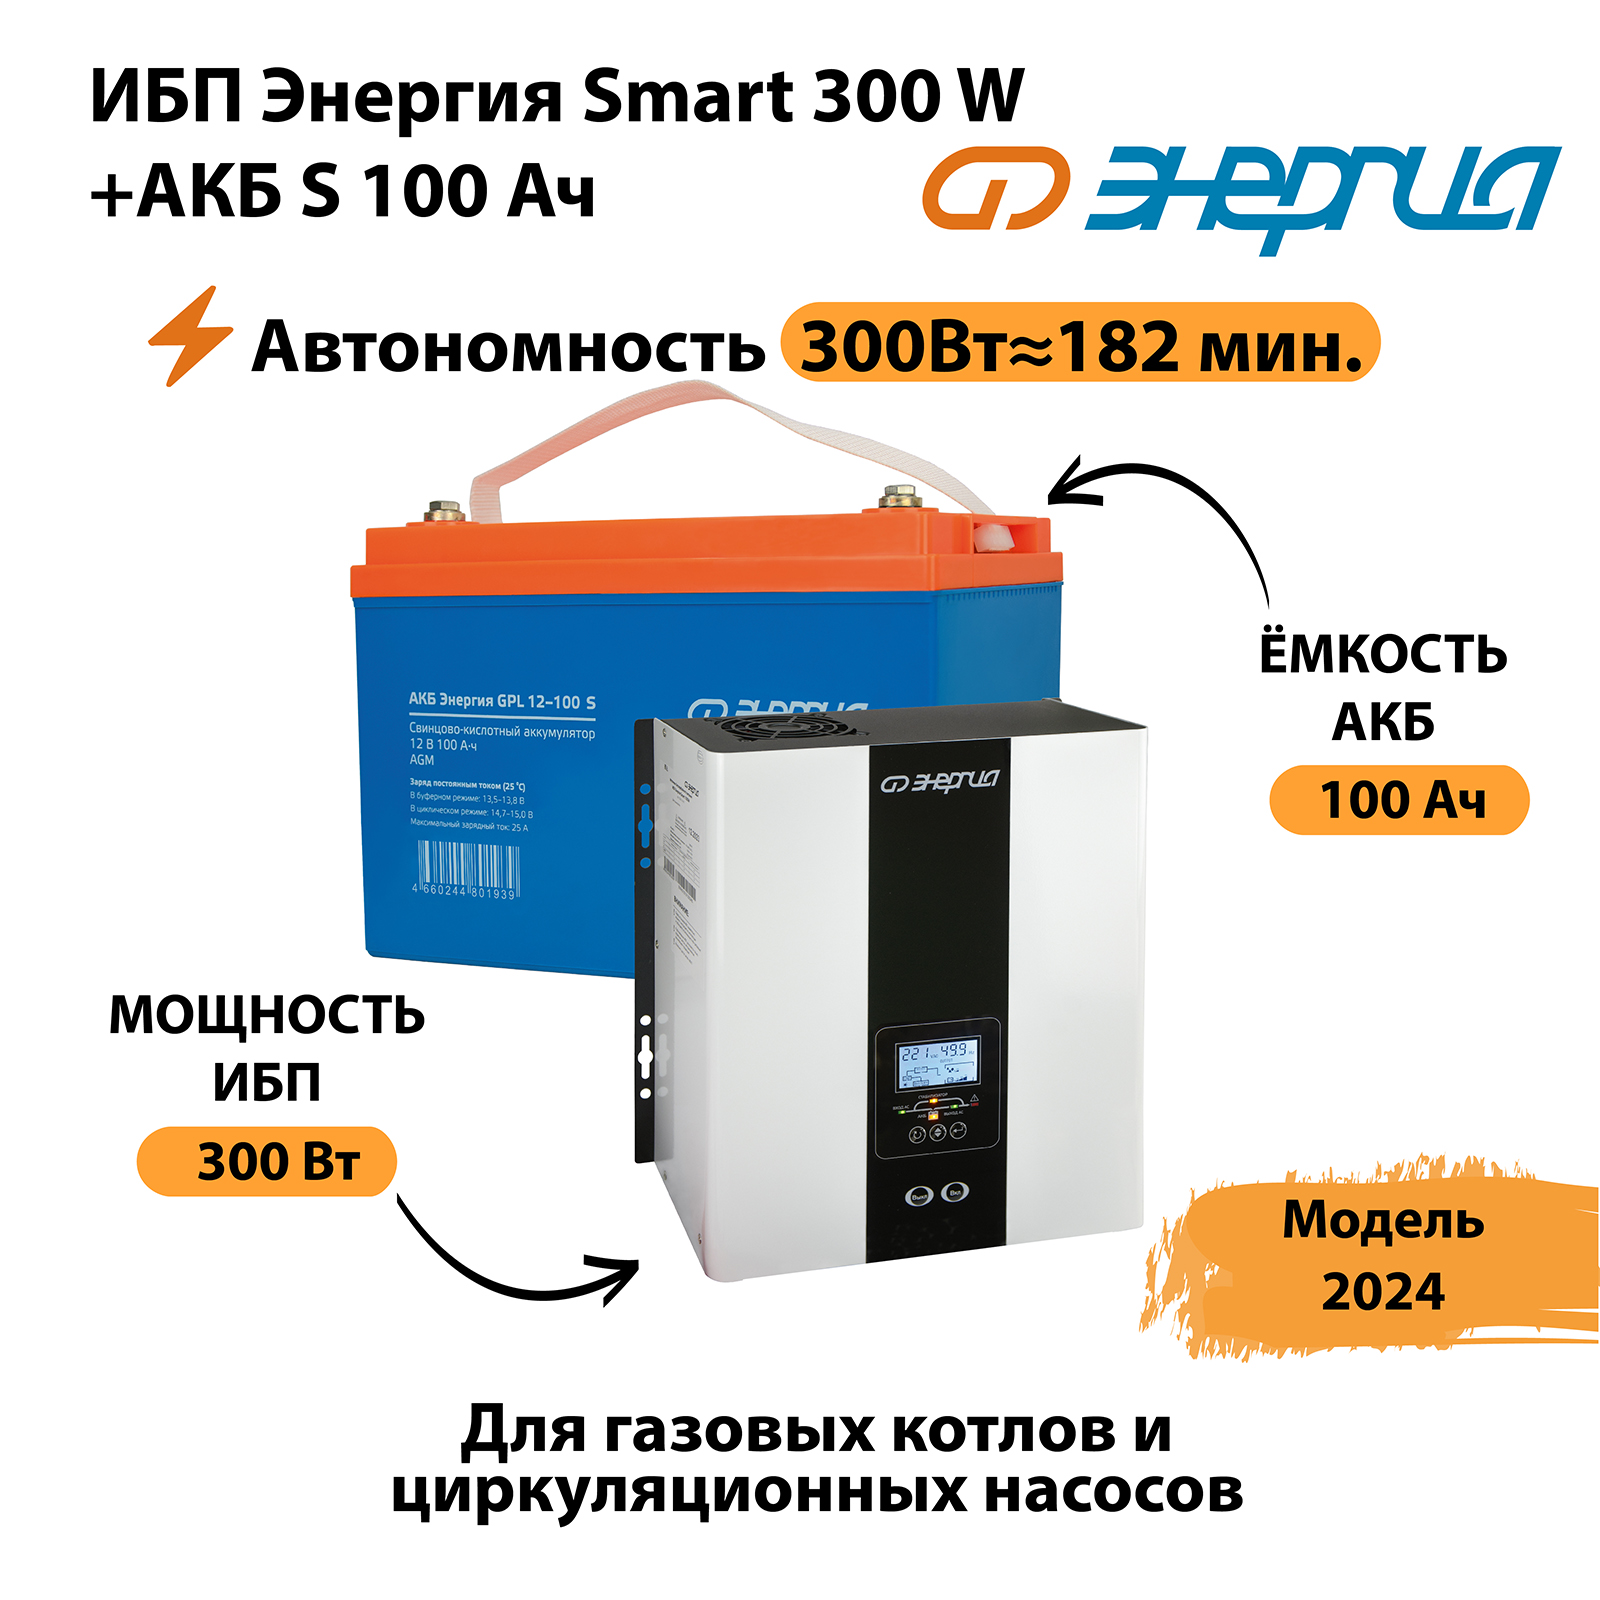   Smart 300W +  S 100  (300  182 ) -   